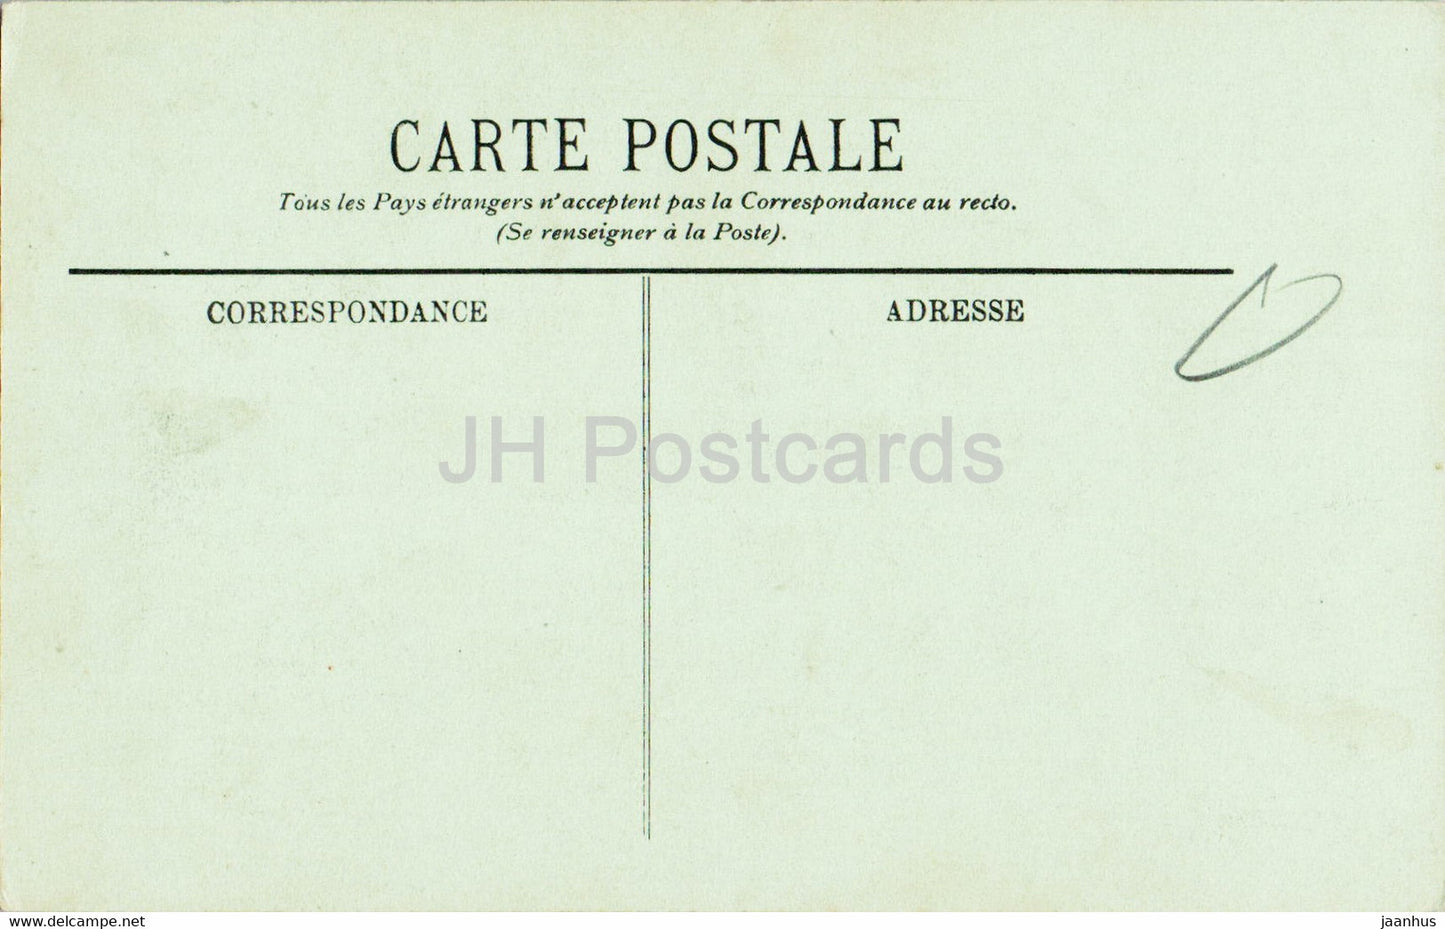 Bordeaux - Le Monument des Girondins - 13 - old postcard - France - unused